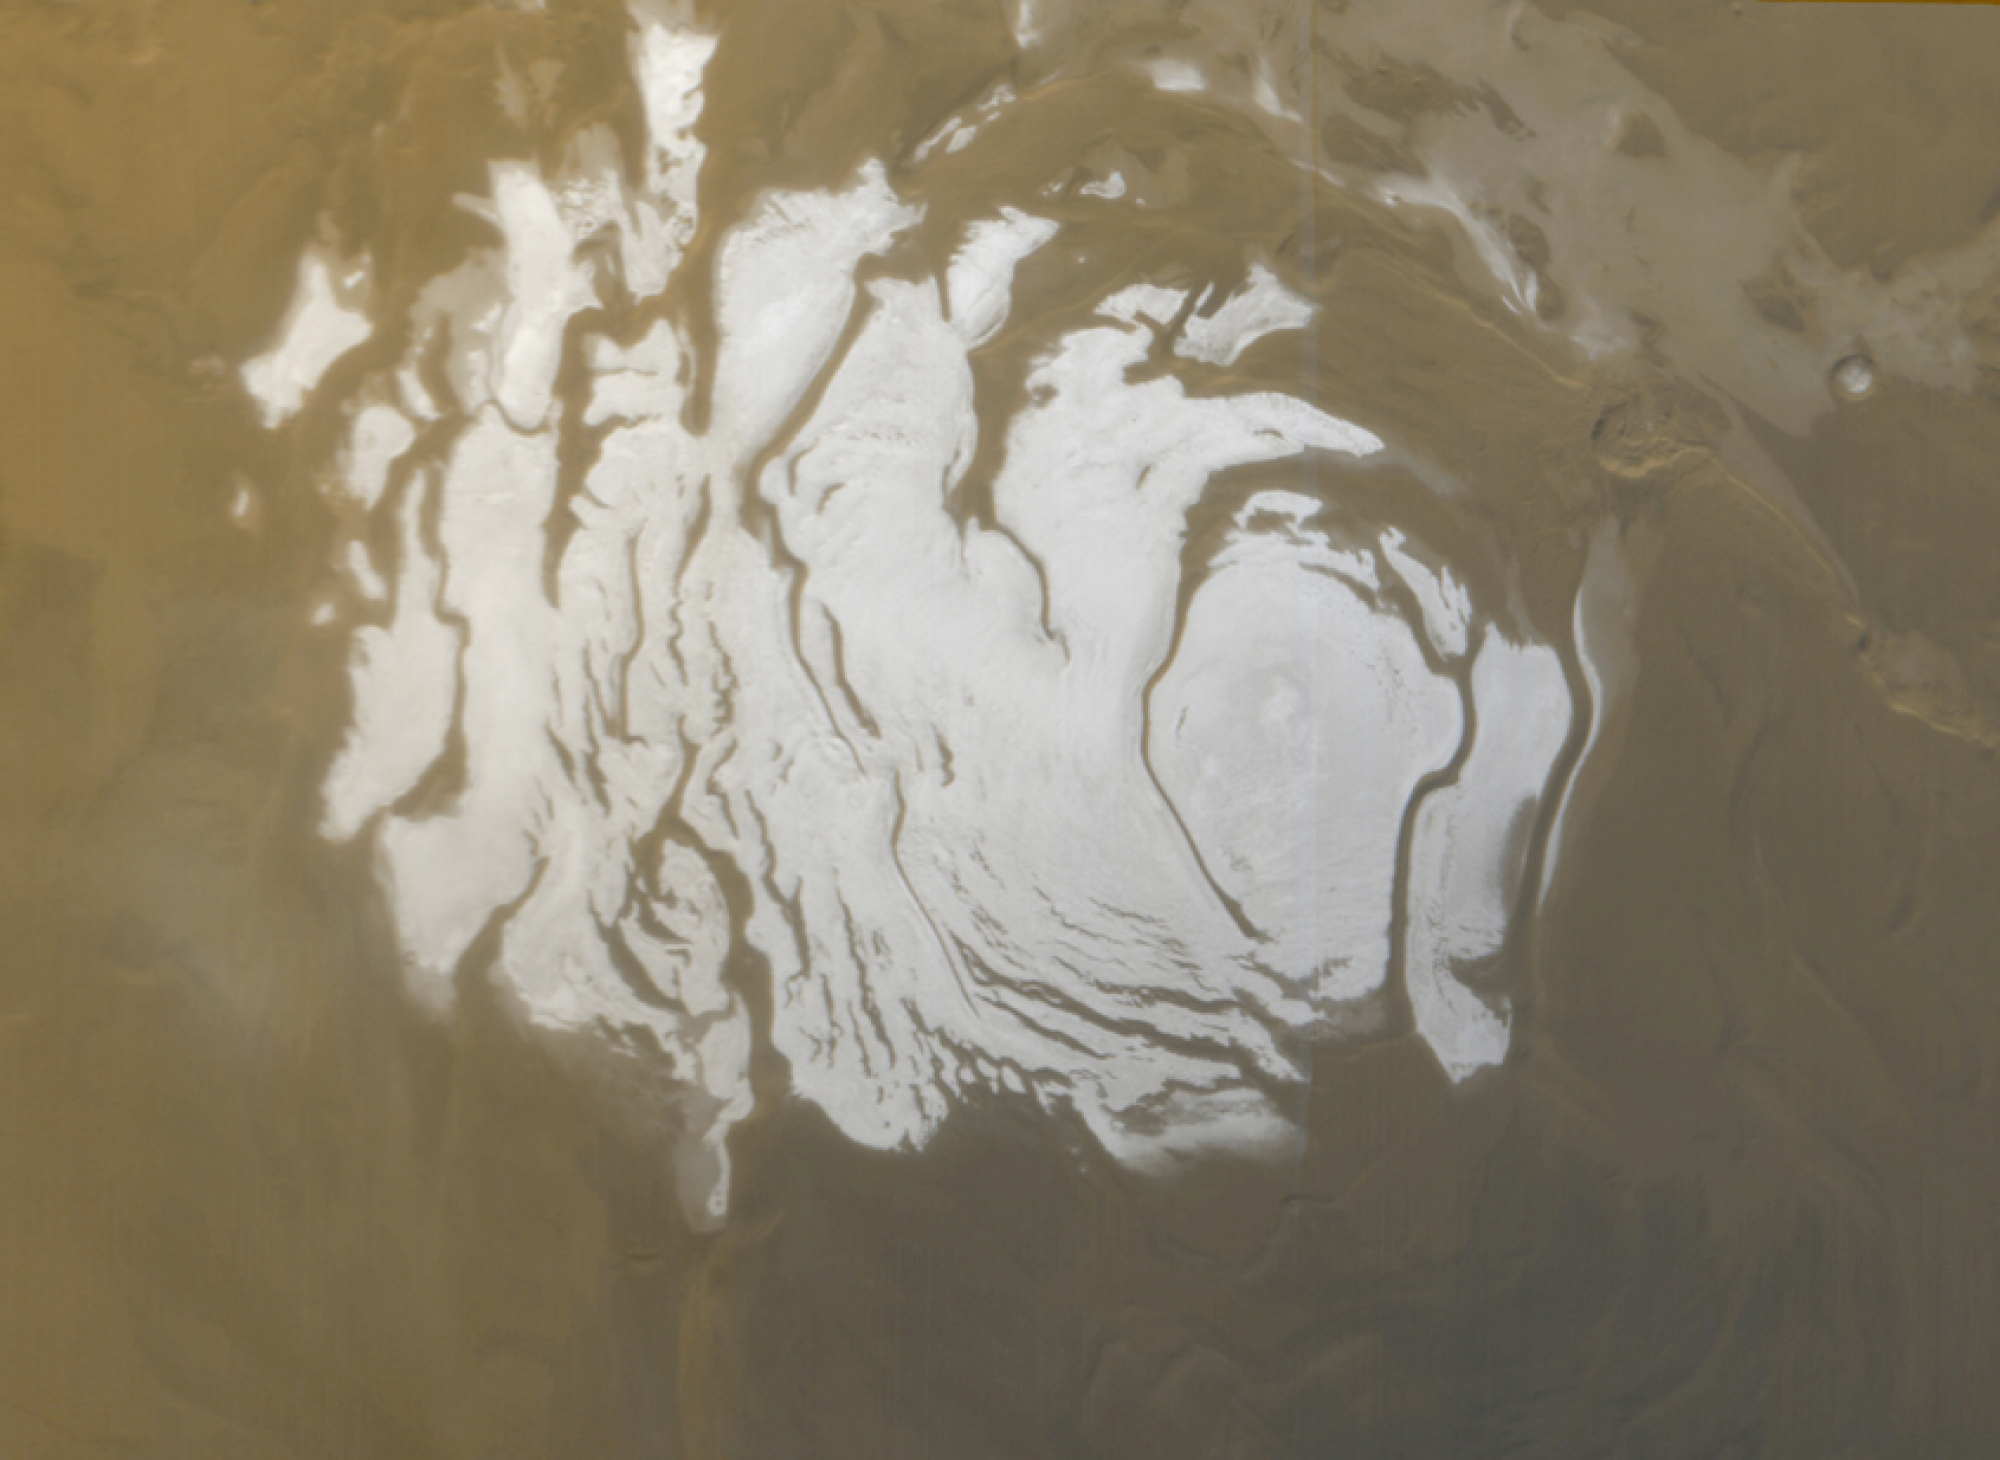 Mars Orbiter étudie la calotte polaire sud